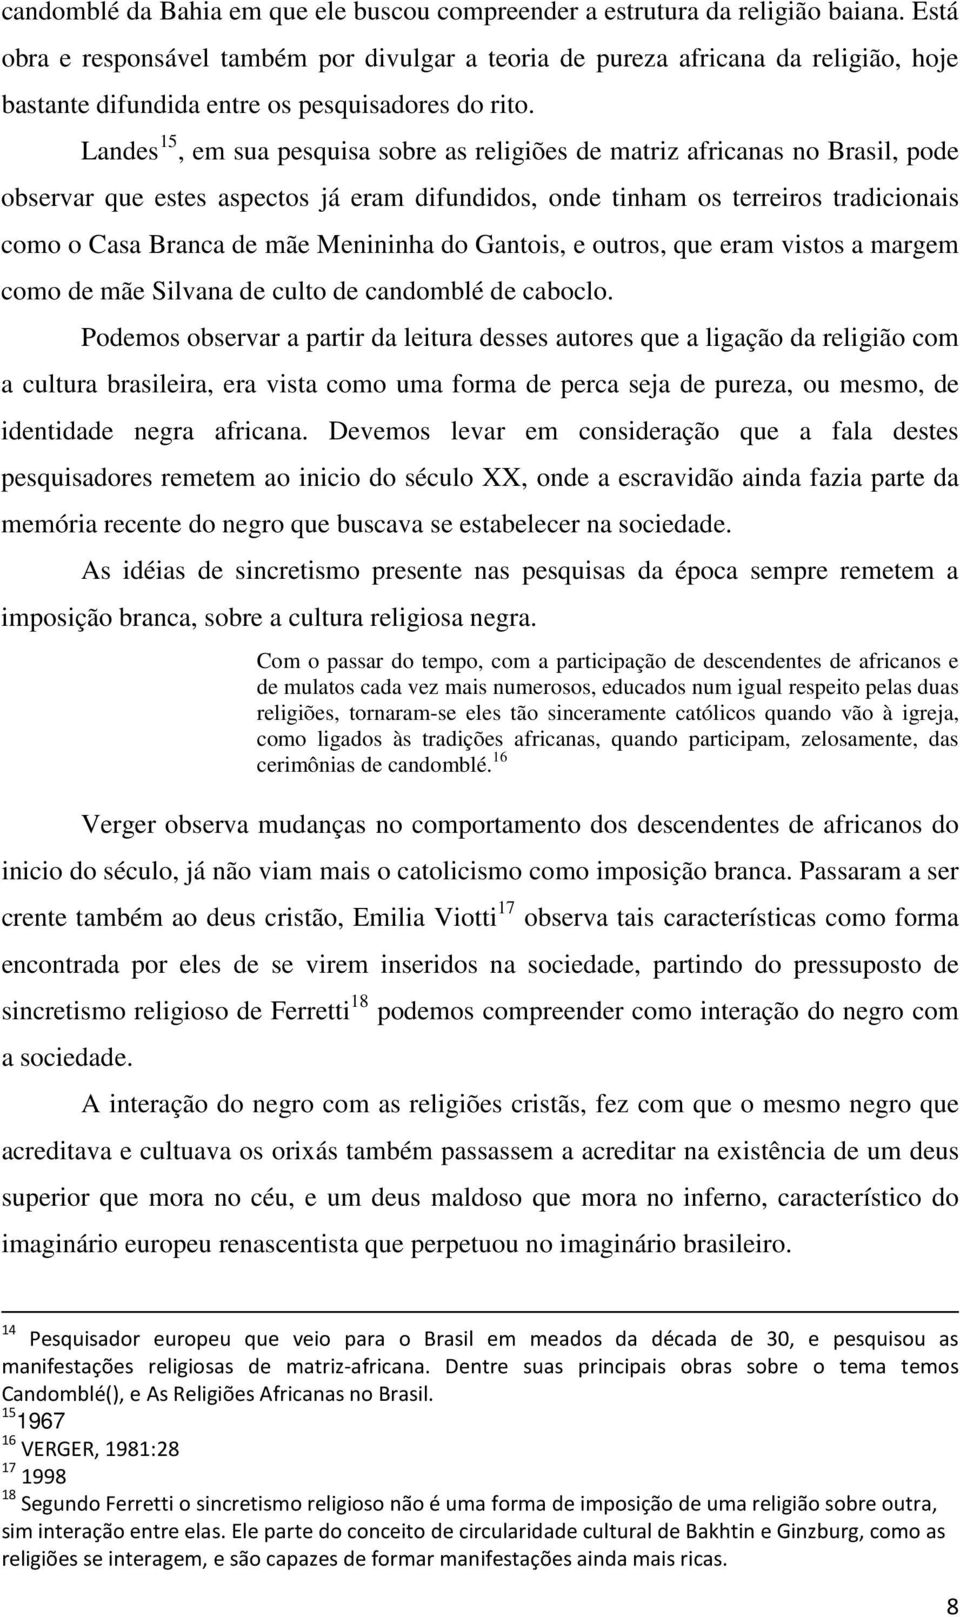 Landes 15, em sua pesquisa sobre as religiões de matriz africanas no Brasil, pode observar que estes aspectos já eram difundidos, onde tinham os terreiros tradicionais como o Casa Branca de mãe